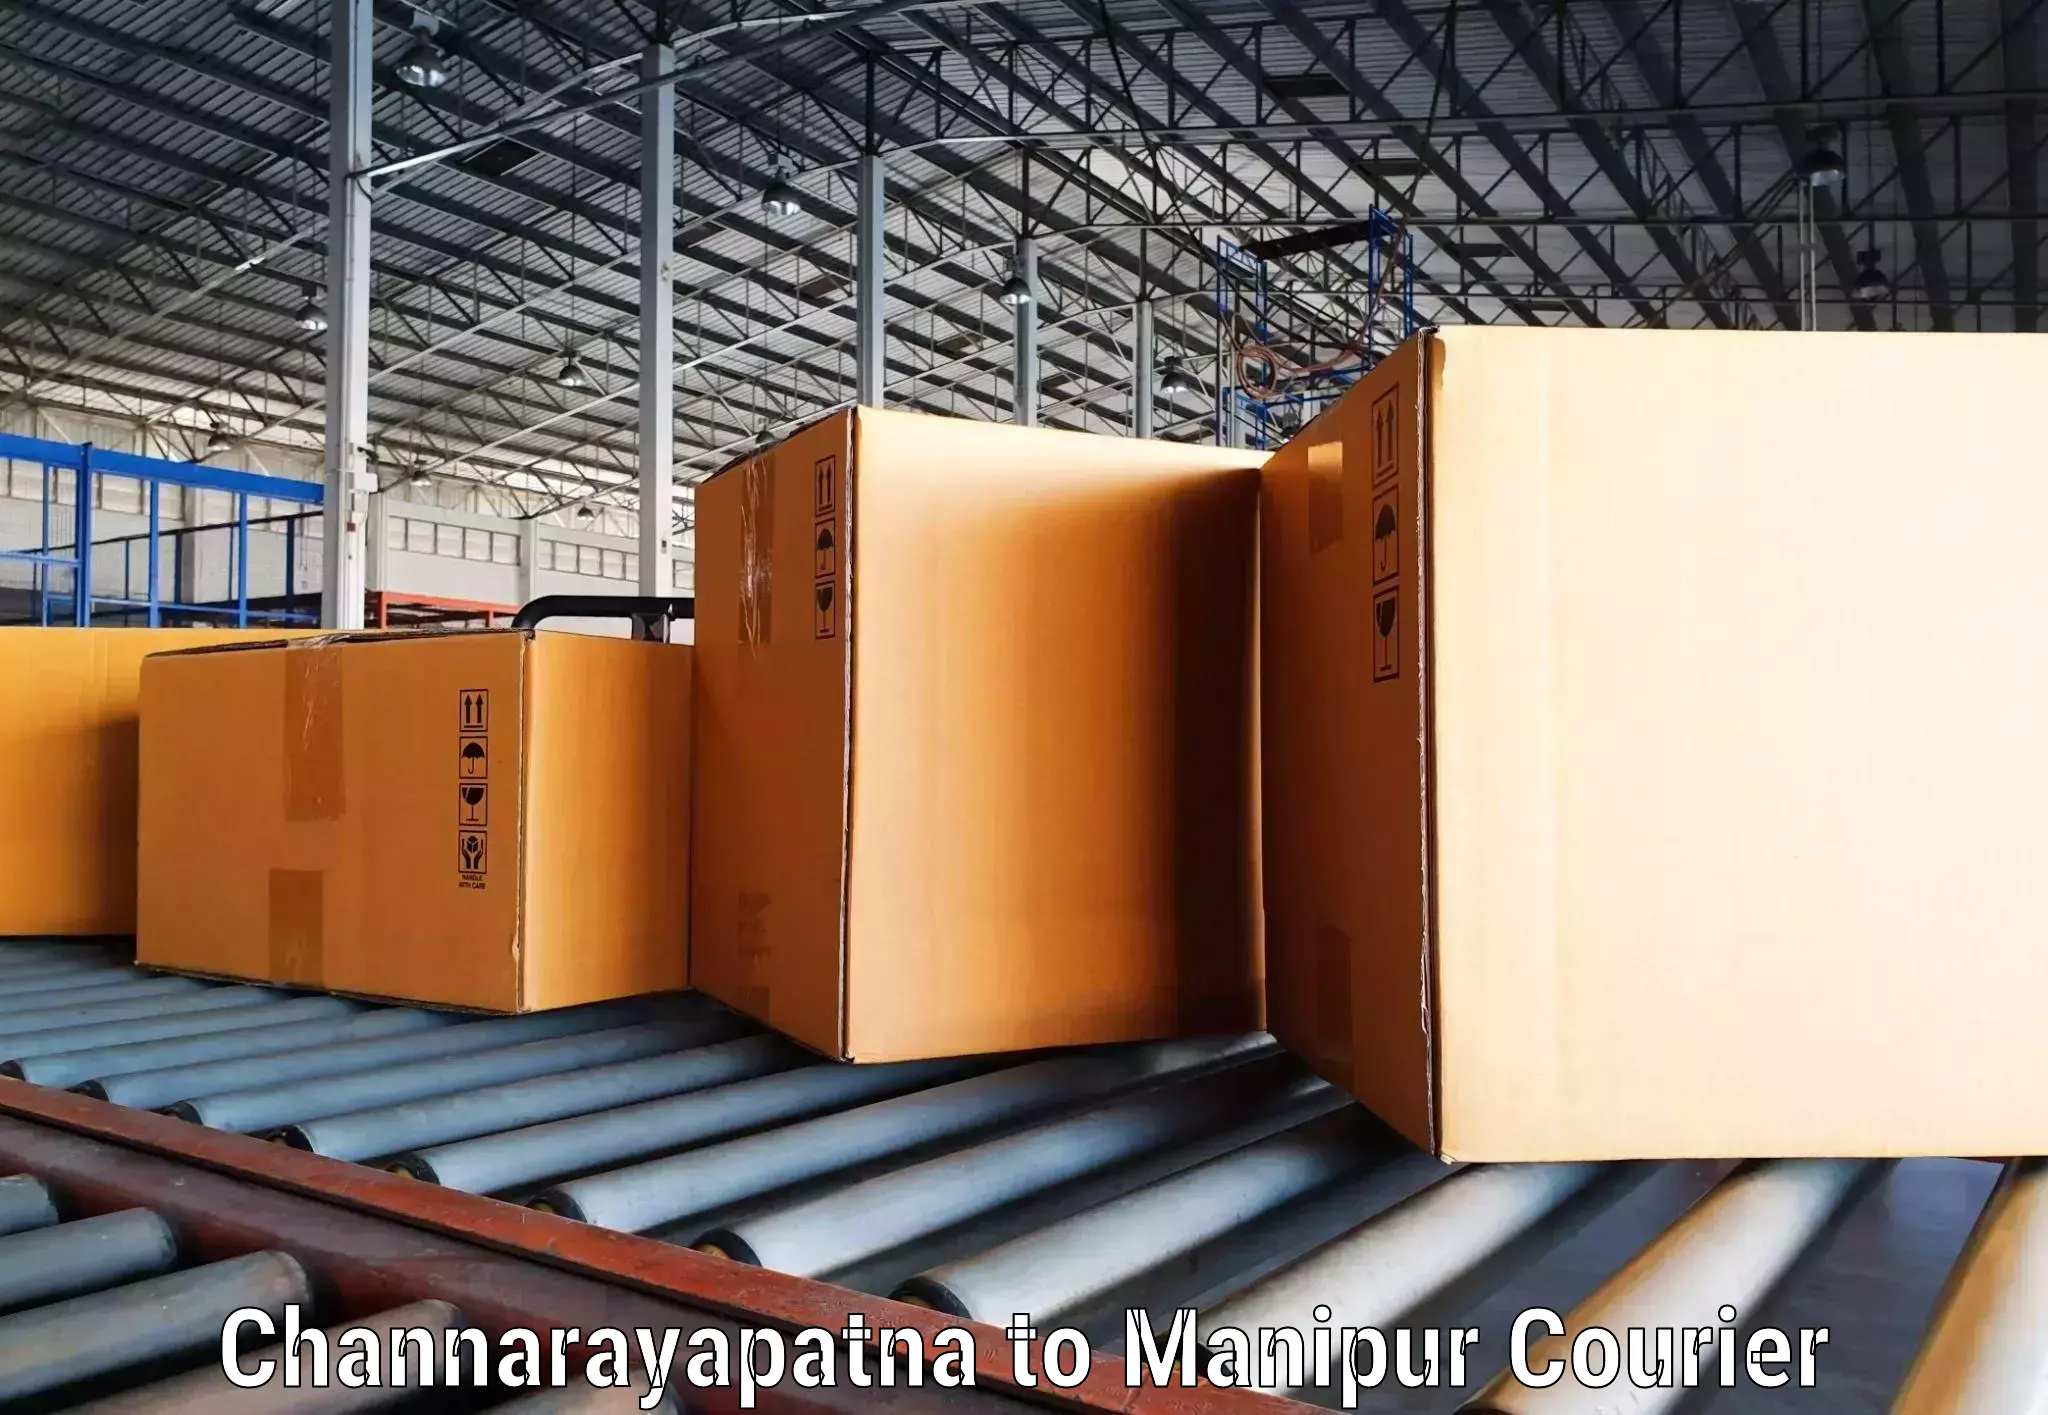 Express delivery capabilities Channarayapatna to Churachandpur